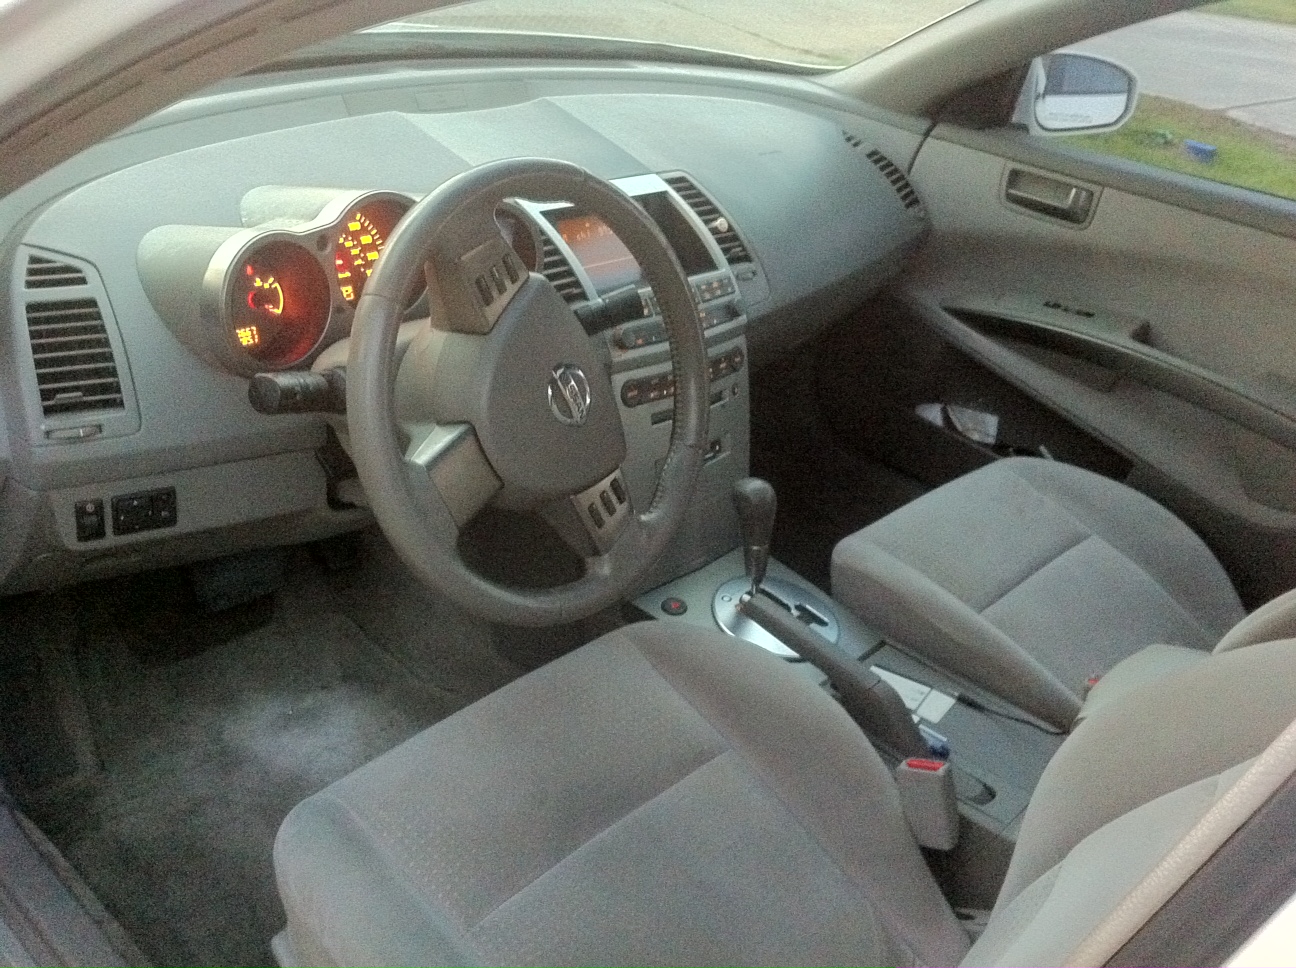 2004 Nissan maxima interior pictures